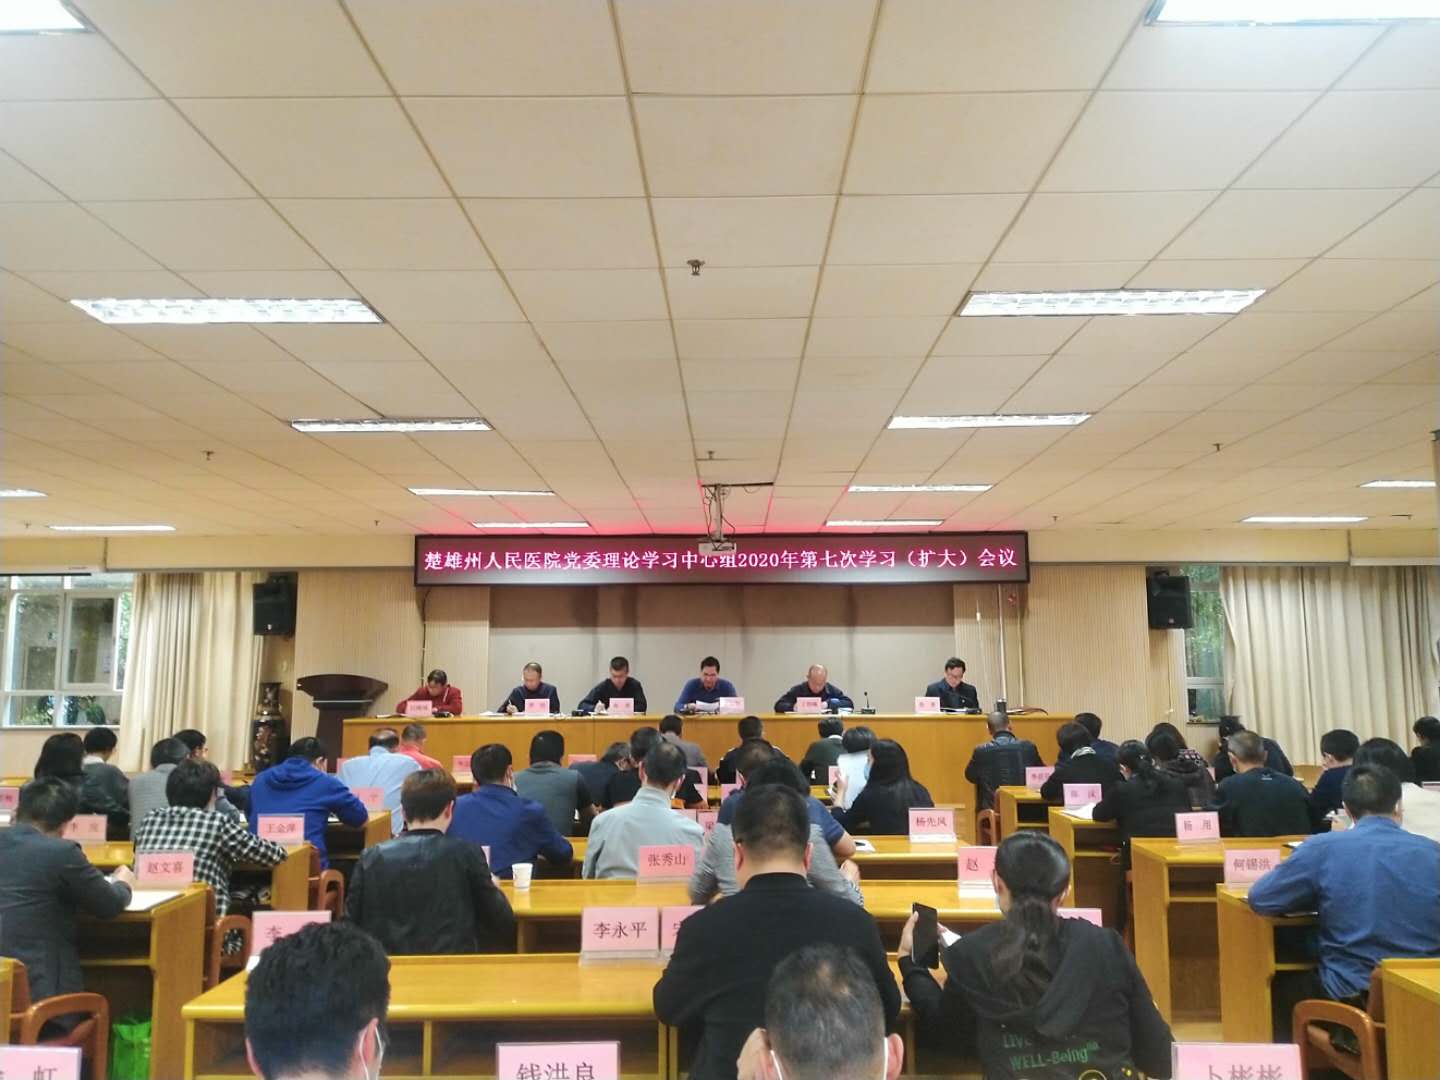 楚雄州人民医院掀起学习宣传贯彻党的十九届五中全会精神热潮